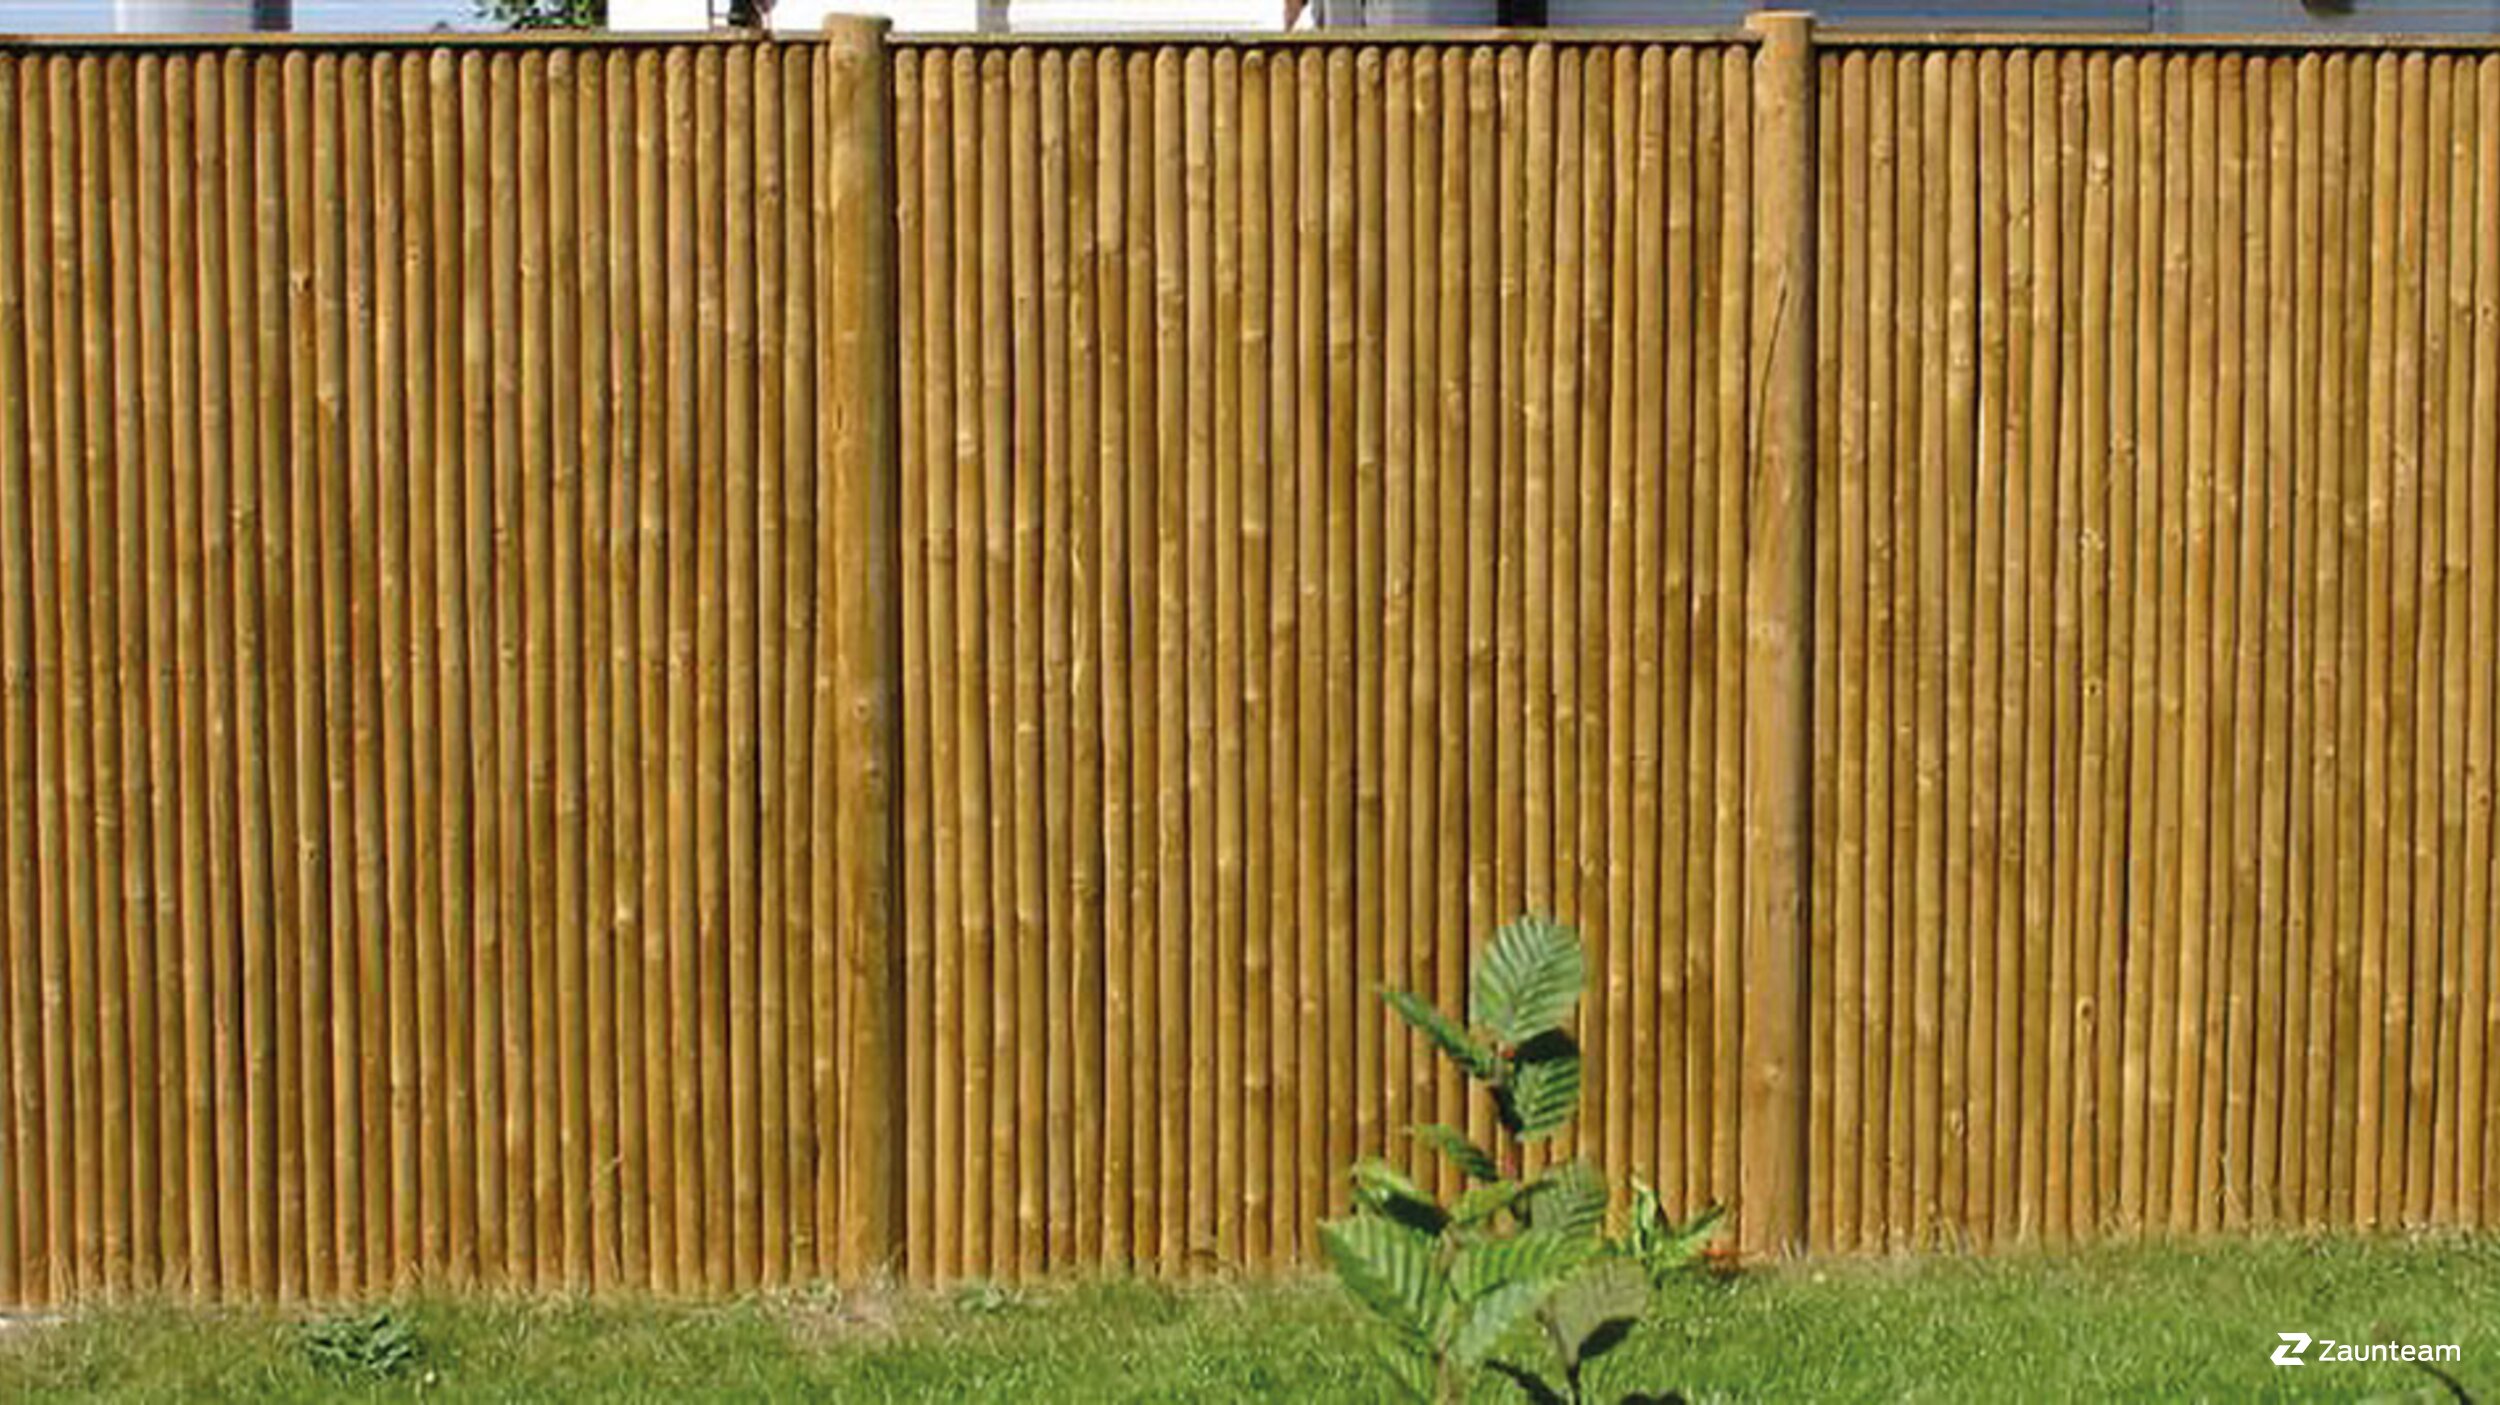 Der Sichtschutz aus Holz "Saas Fee" eignet sich hervorragend als Sicht- und Lärmschutz. Der Holz Sichtschutz Saas Fee ist aus imprägnierter Fichte gefertigt.  | © Zaunteam